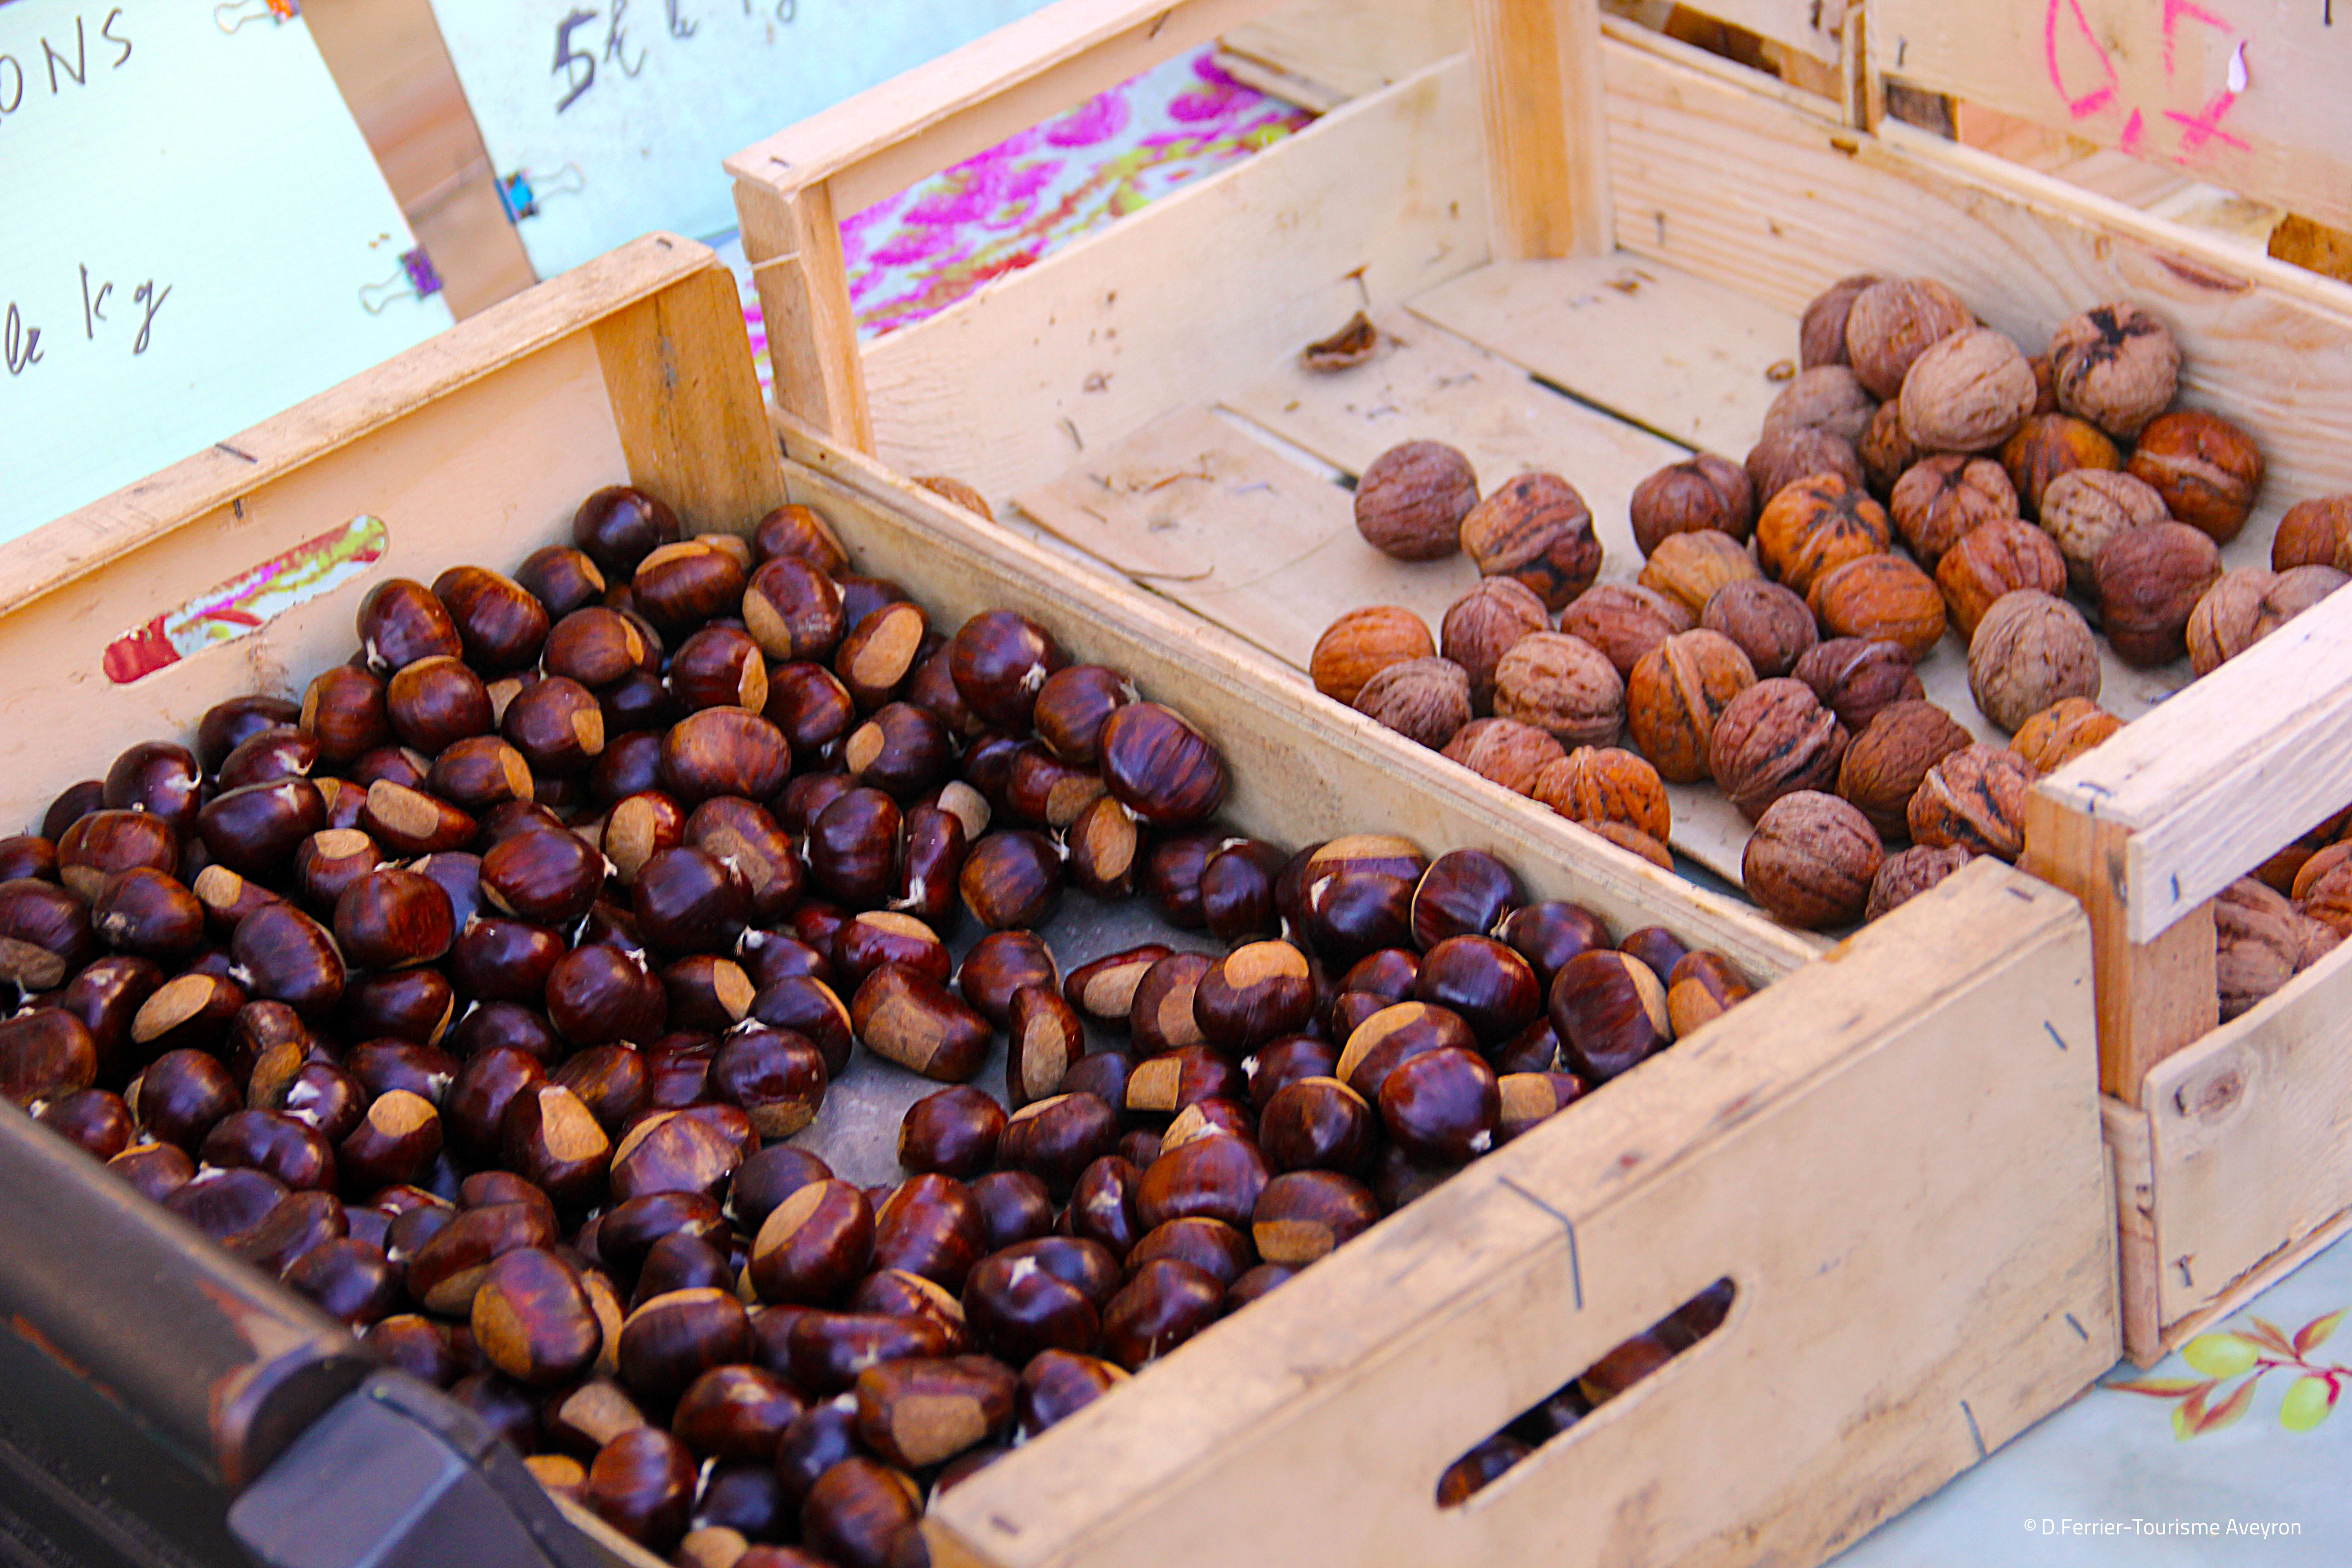 Marrons et noix, marché de Rodez, Aveyron © D.Ferrier - Tourisme Aveyron